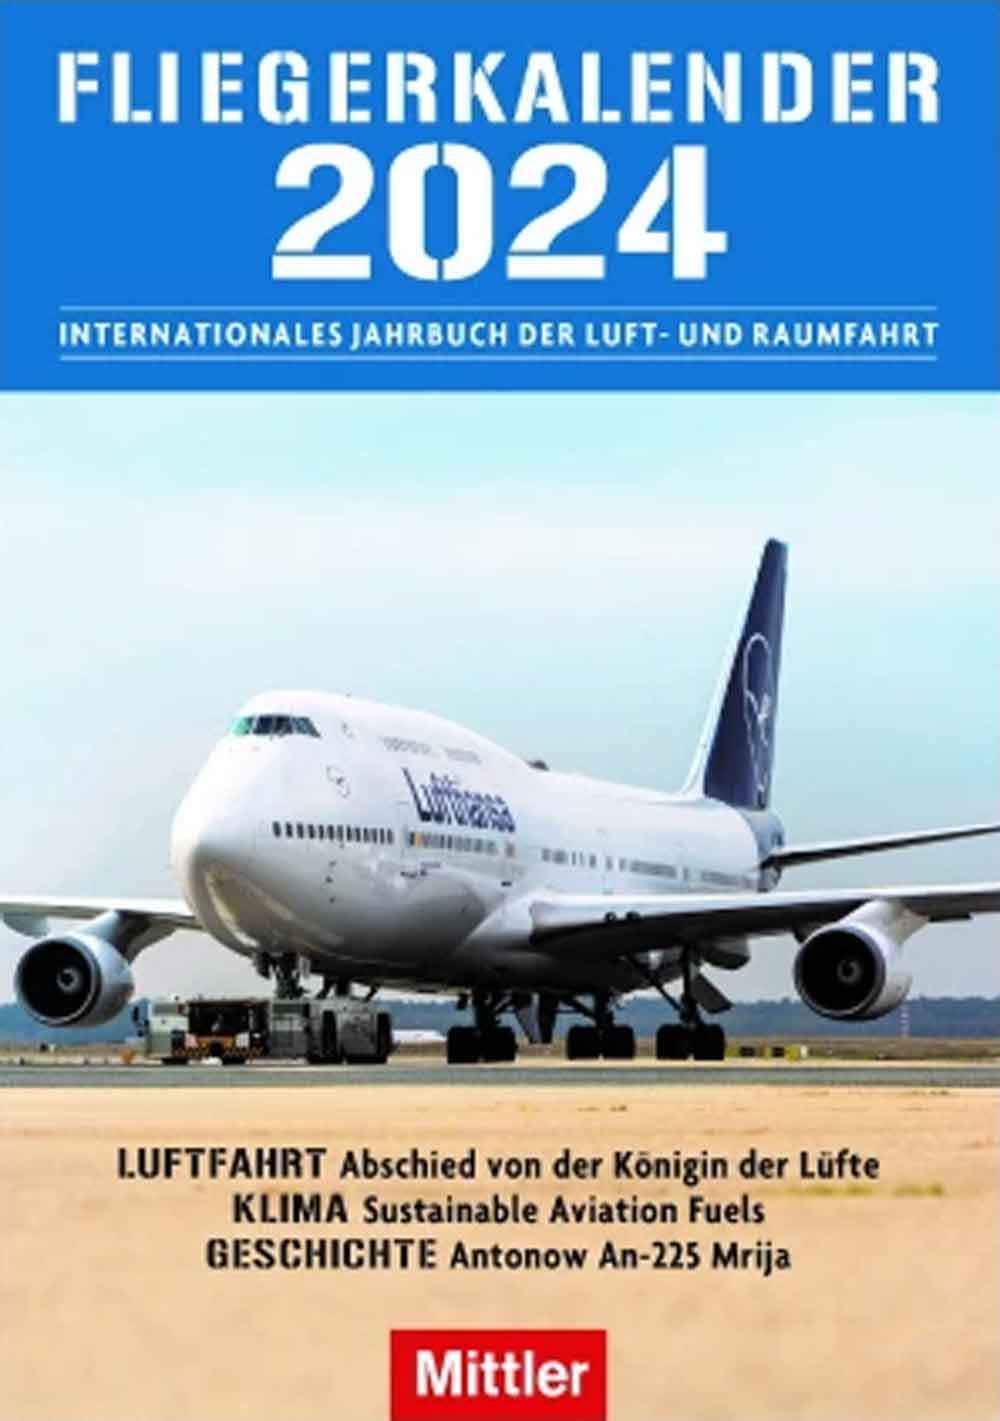 Internationales Jahrbuch der Luftfahrt und Raumfahrt: Fliegerkalender 2024 ab sofort bei Mittler bestellbar